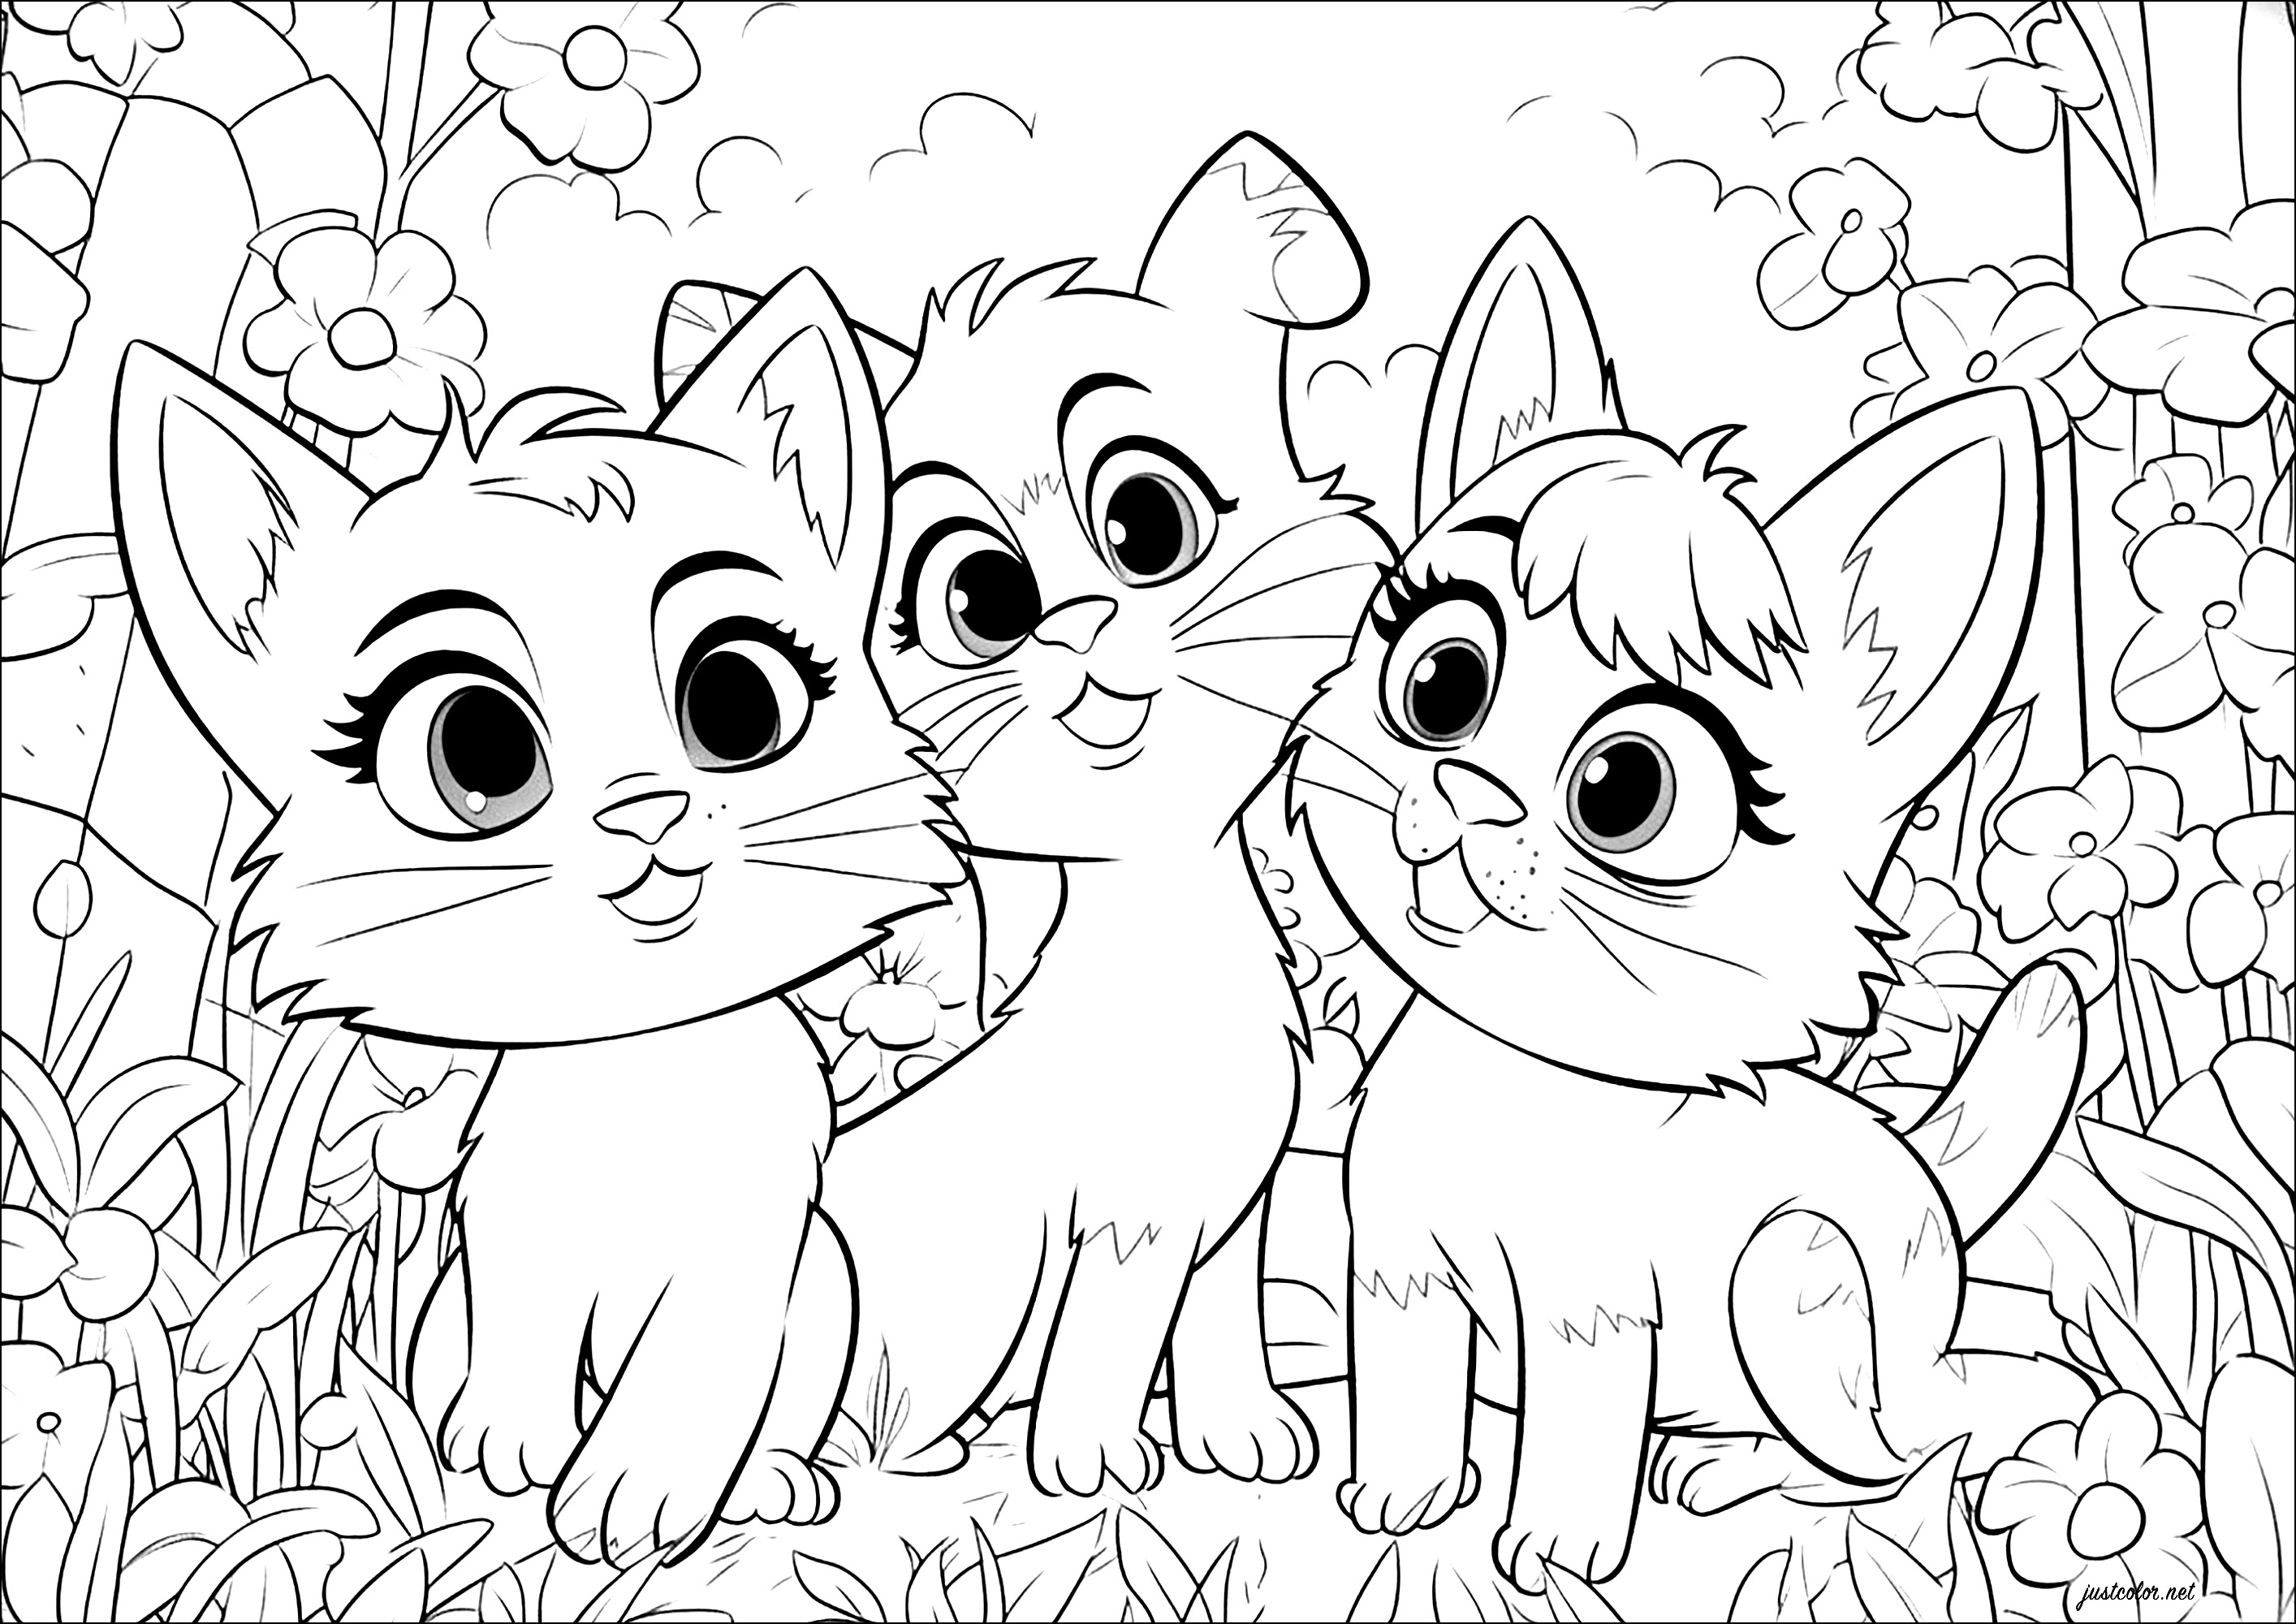 Tre gatti, stile Disney - Pixar. Questi tre gatti sono disegnati con uno stile che ricorda i film d'animazione Disney e Pixar.